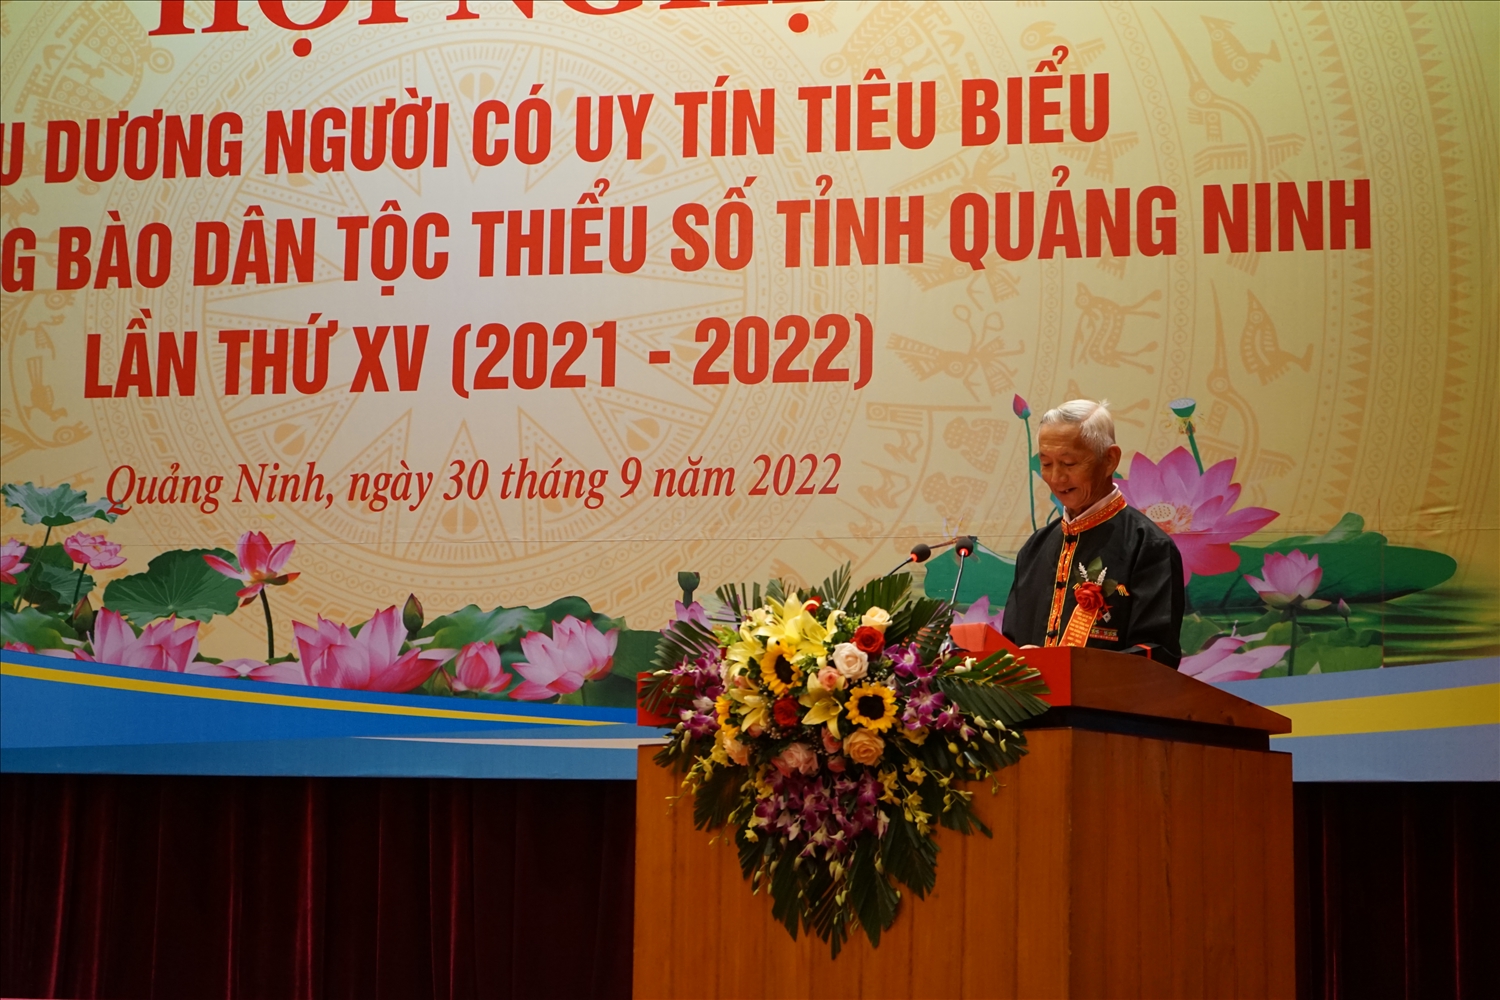 Ông Chíu Sồi Thoòng phát biểu tham luận tại Hội nghị biểu dương Người có uy tín tiêu biểu trong đồng bào DTTS tỉnh Quảng Ninh lần thứ XV (2021 - 2022)